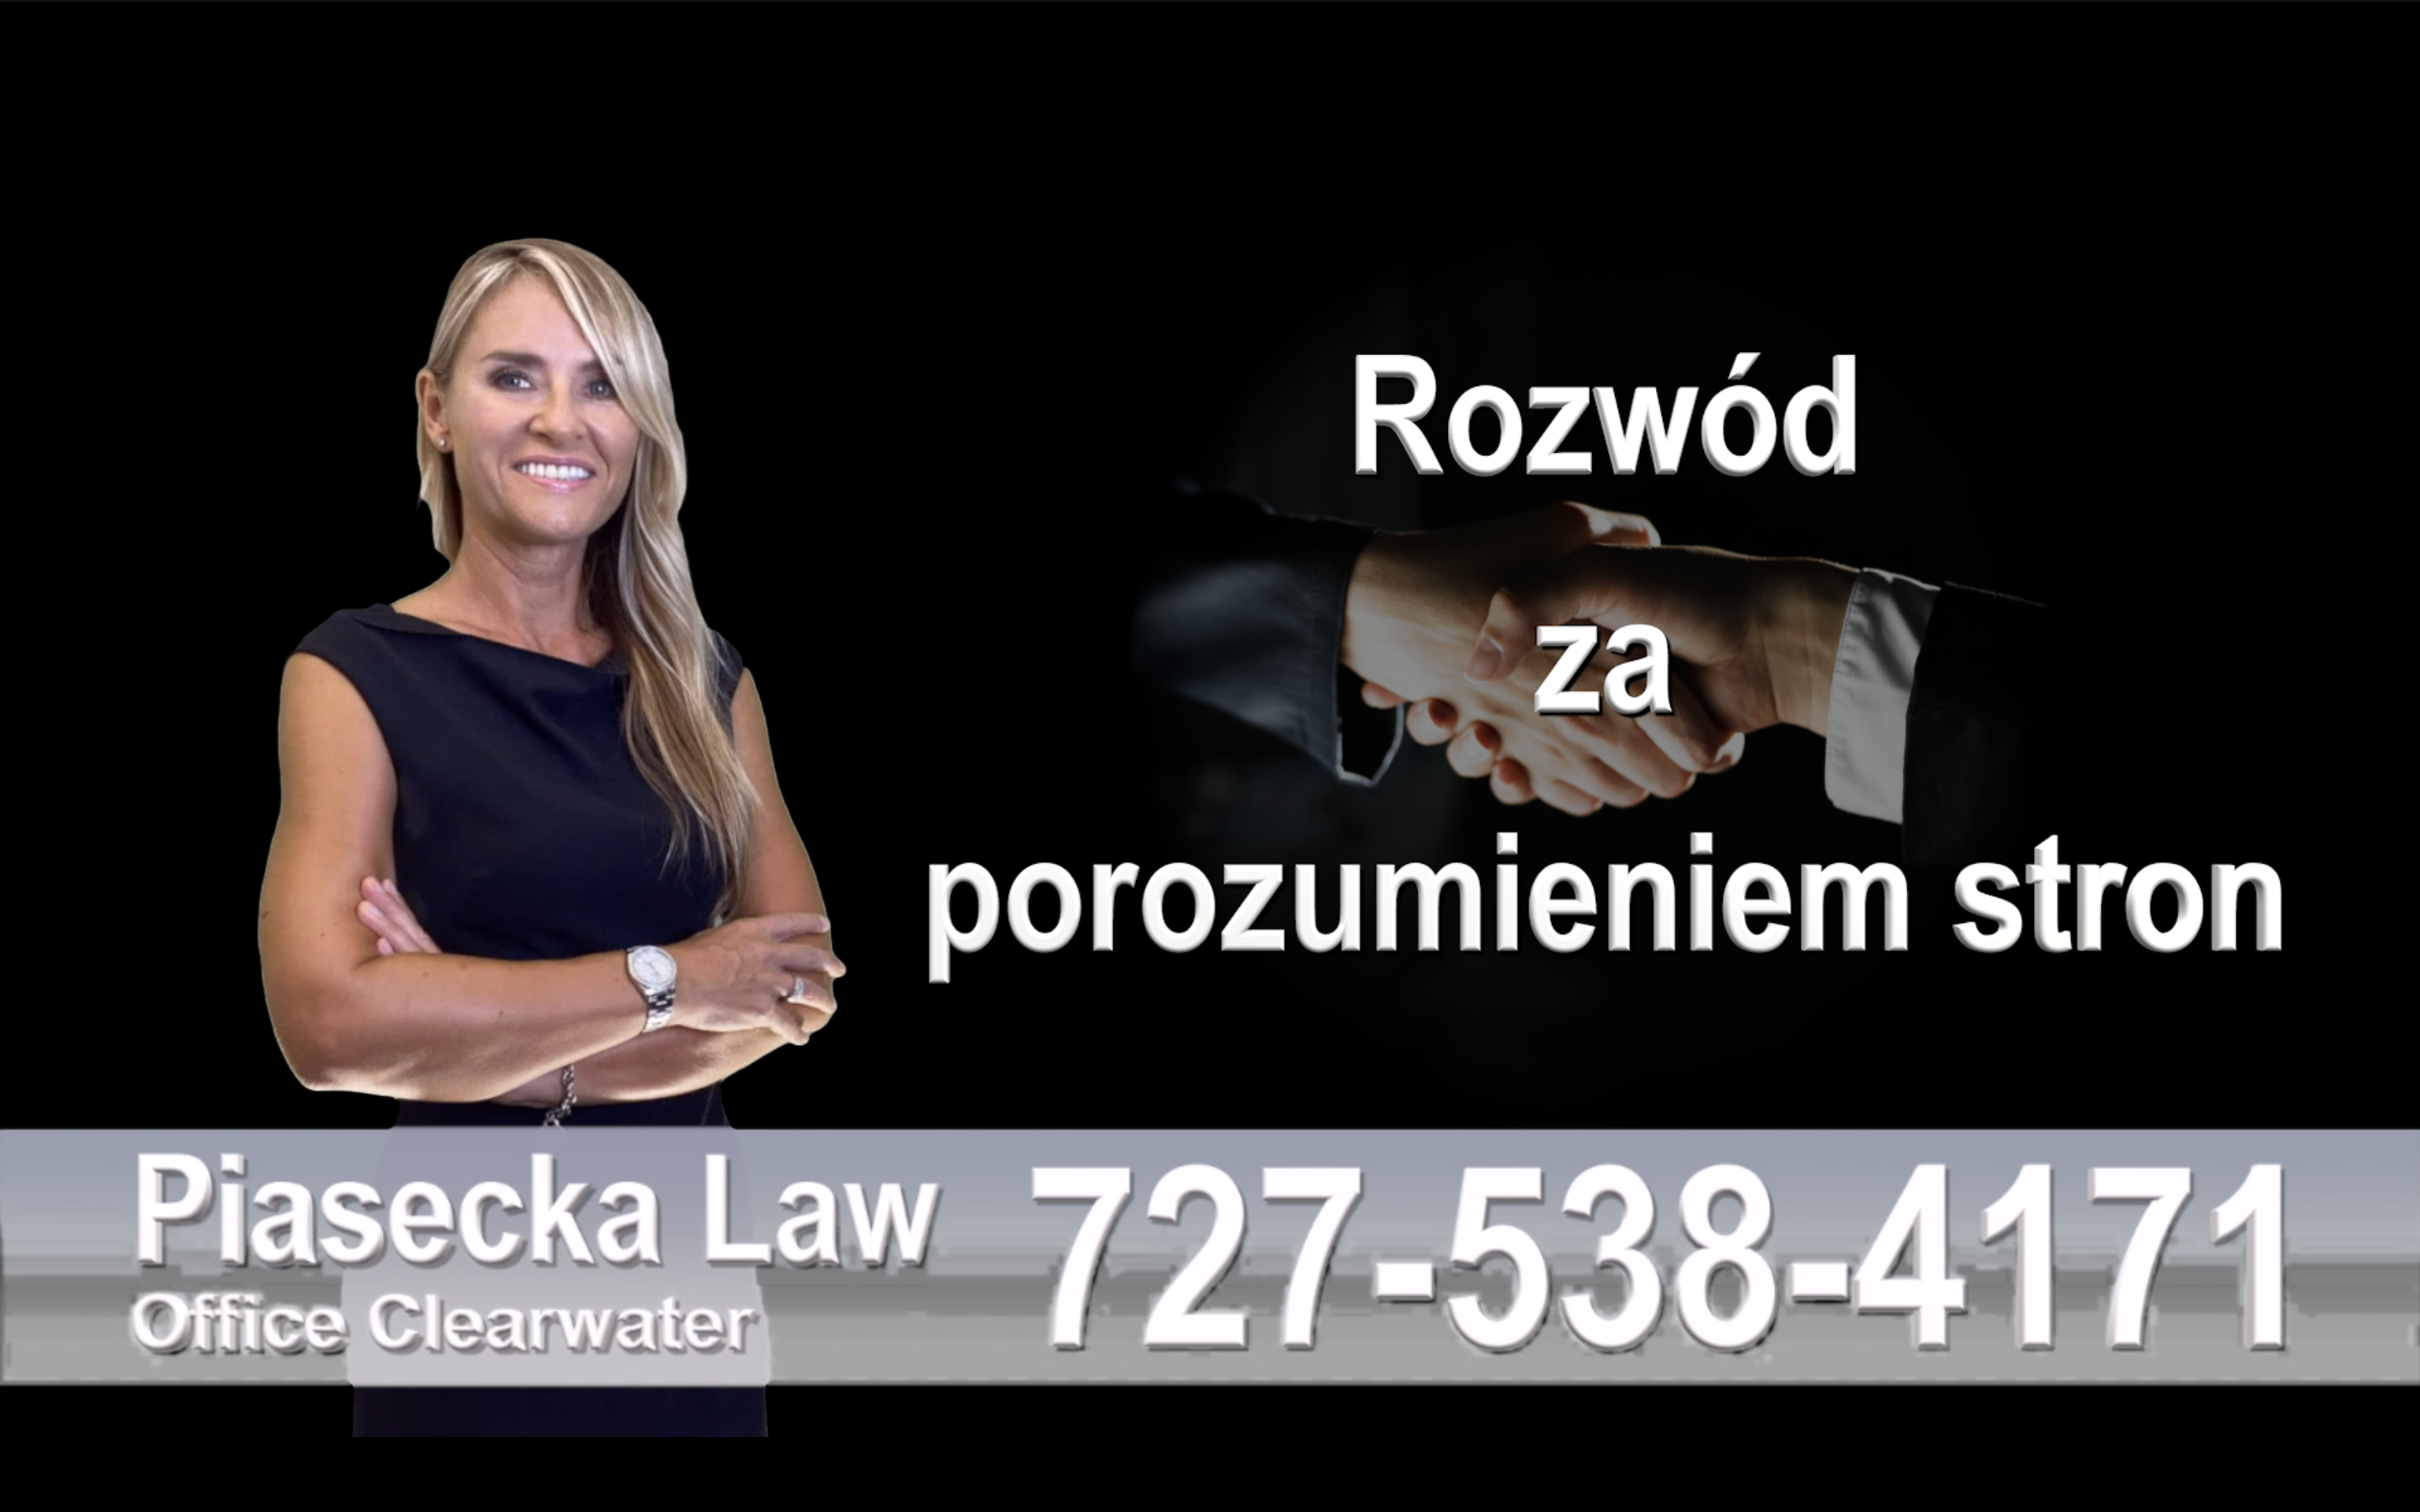 Attorney, Agnieszka Piasecka, can help you with: Family Law, Divorce, Collaborative Divorce, Adoptions, Injunctions / Prawo Rodzinne, Rozwody, Rozwód za porozumieniem stron, Opieka nad dziećmi, Alimenty, Adopcje, Zakaz zbliżania się